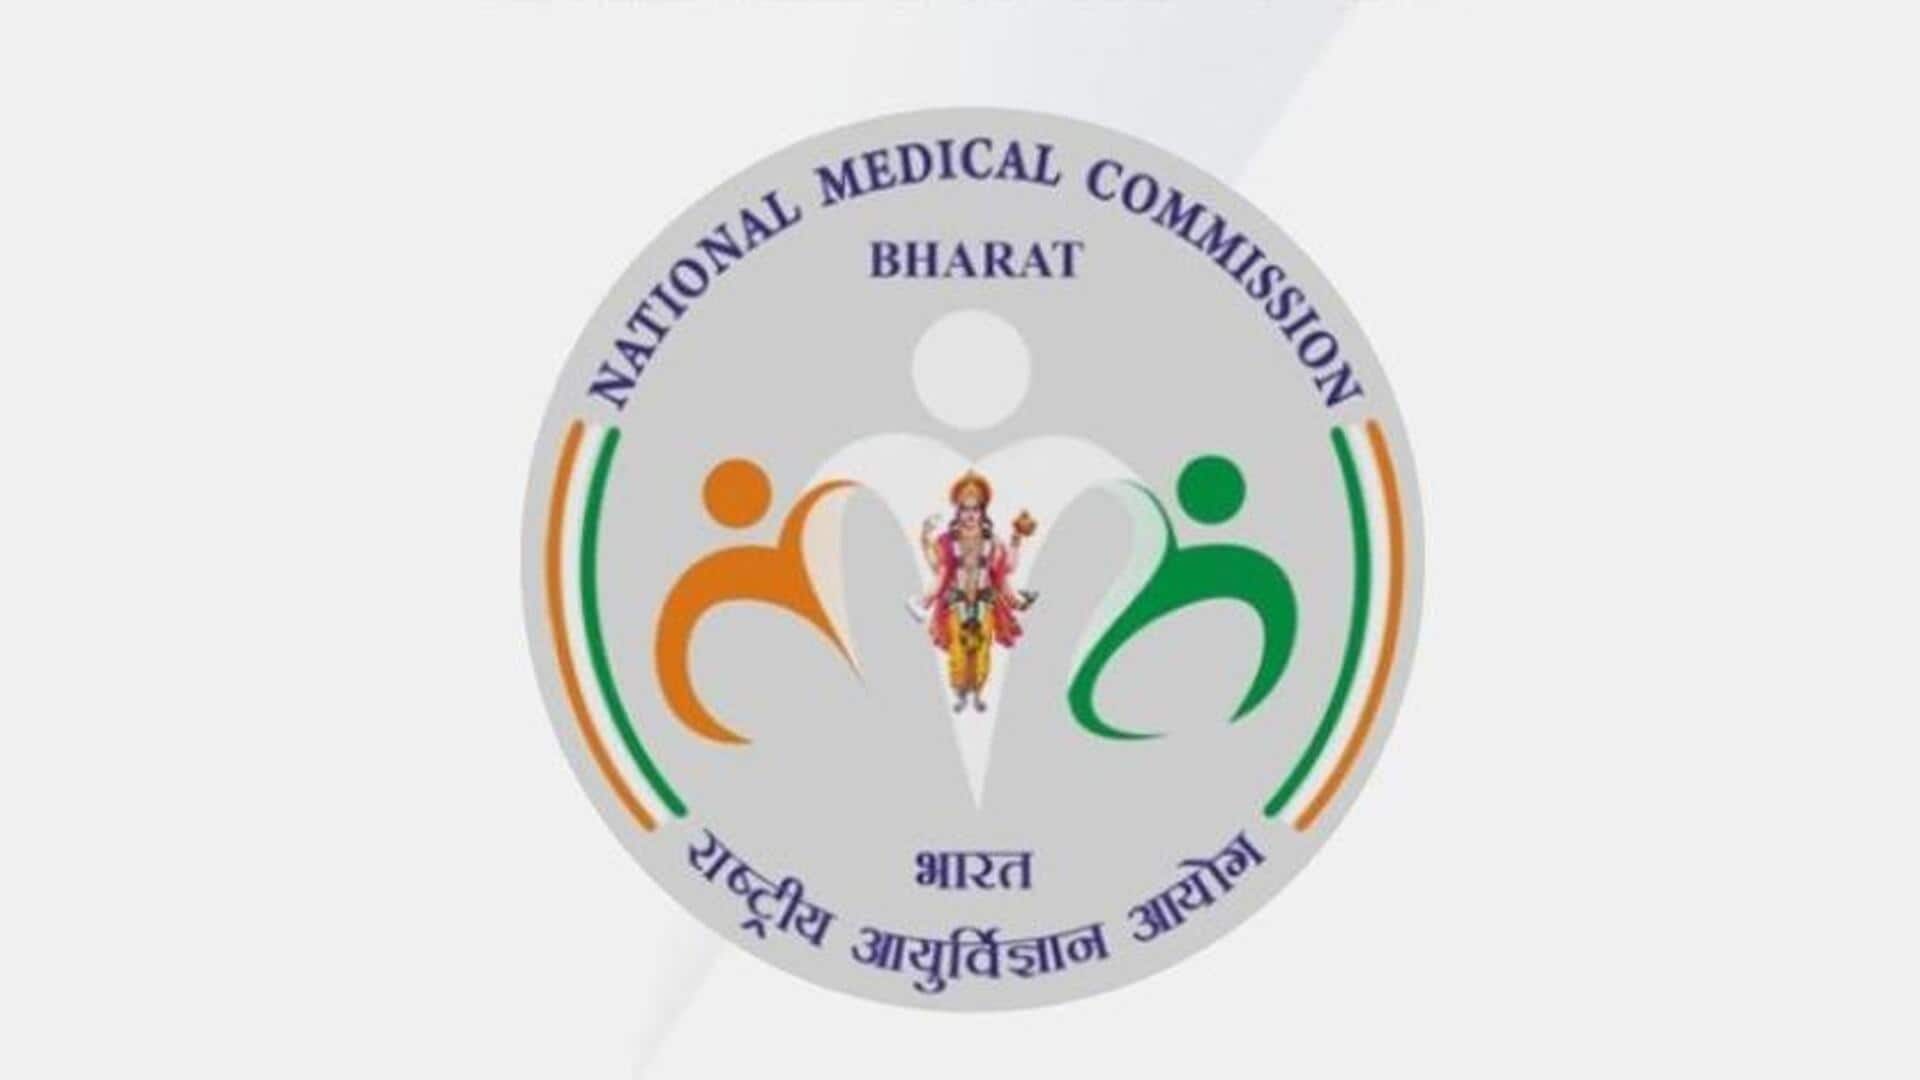 IMA Kerala objects National Medical Commission's logo depicting Hindu deity